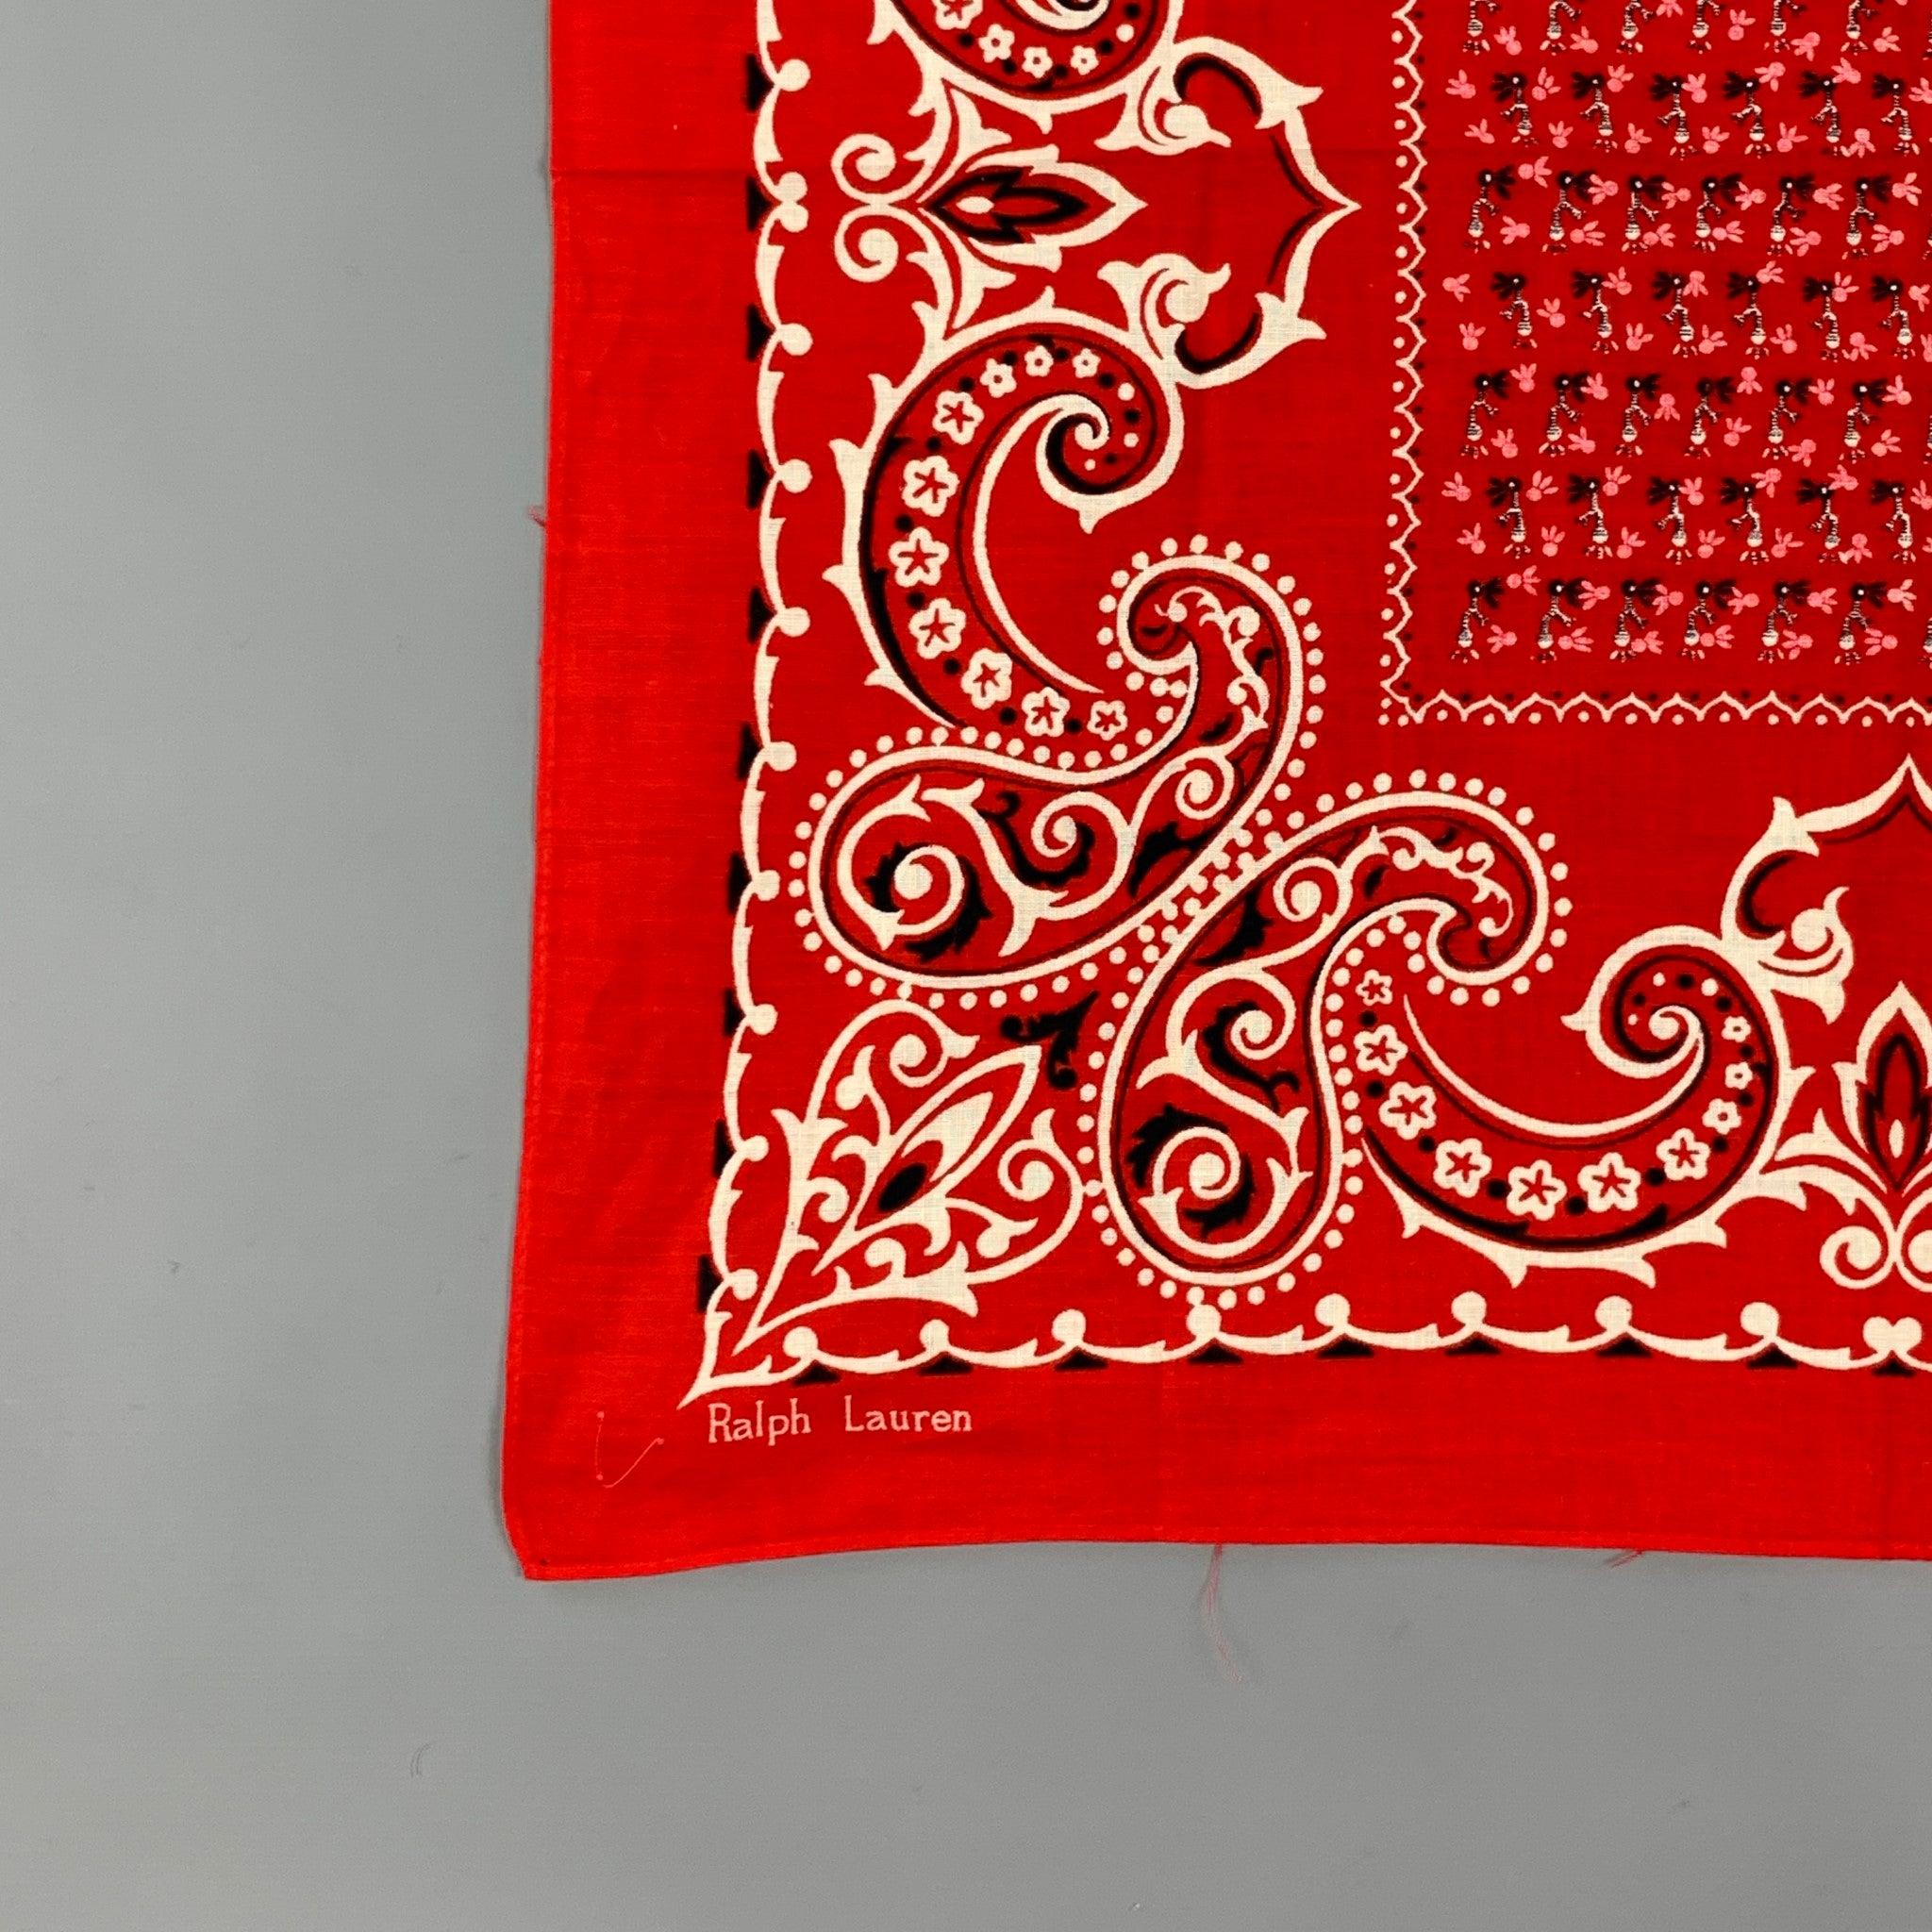 Das Einstecktuch von RALPH LAUREN ist aus einem rot-schwarz bedruckten Material gefertigt.
Sehr guter gebrauchter Zustand. Stoffetikett entfernt.  

Abmessungen: 
  21 Zoll  x 20 Zoll 
  
  
 
Referenz: 118806
Kategorie: Einstecktuch
Mehr Details
  